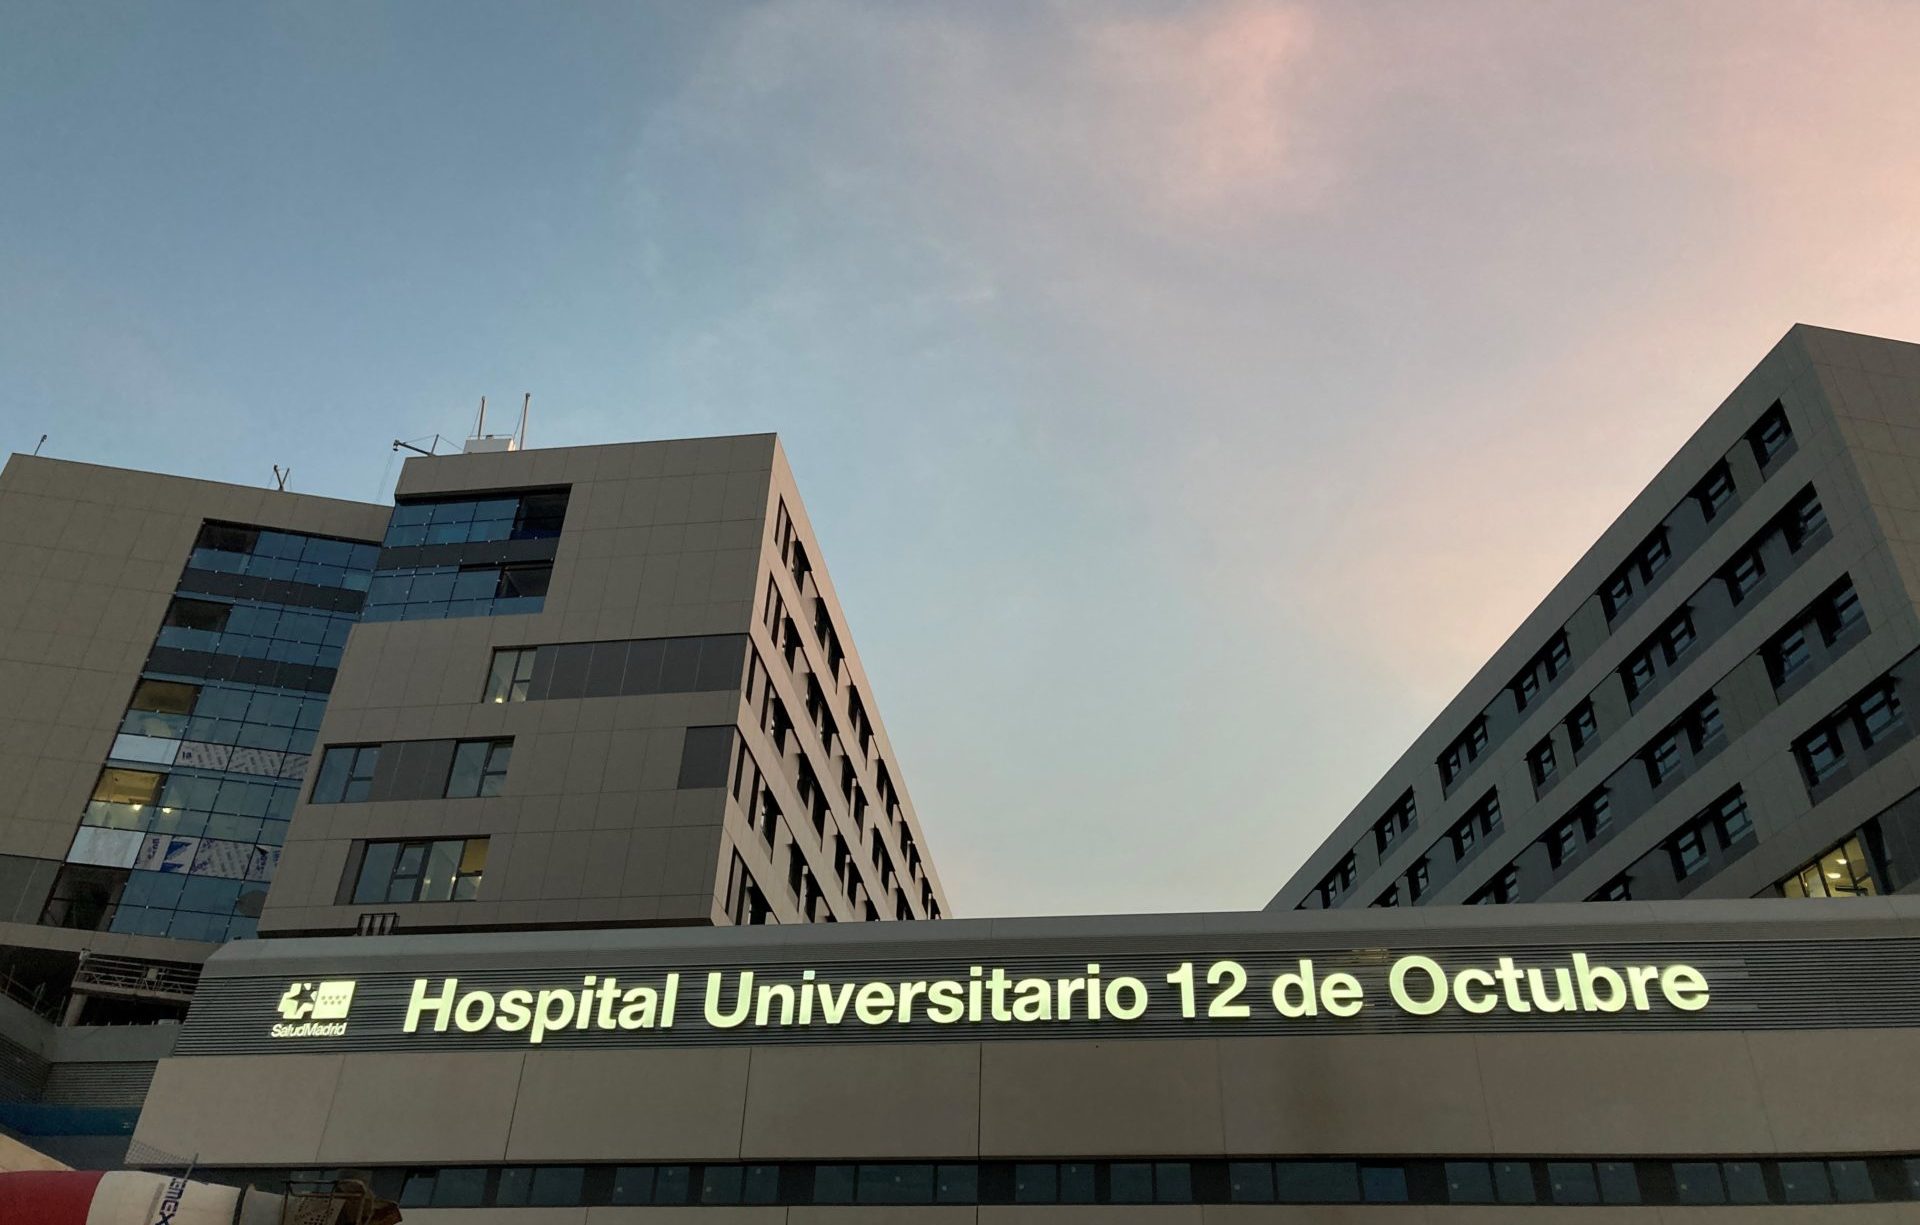 Hospital Universitario 12 de Octubre fachada